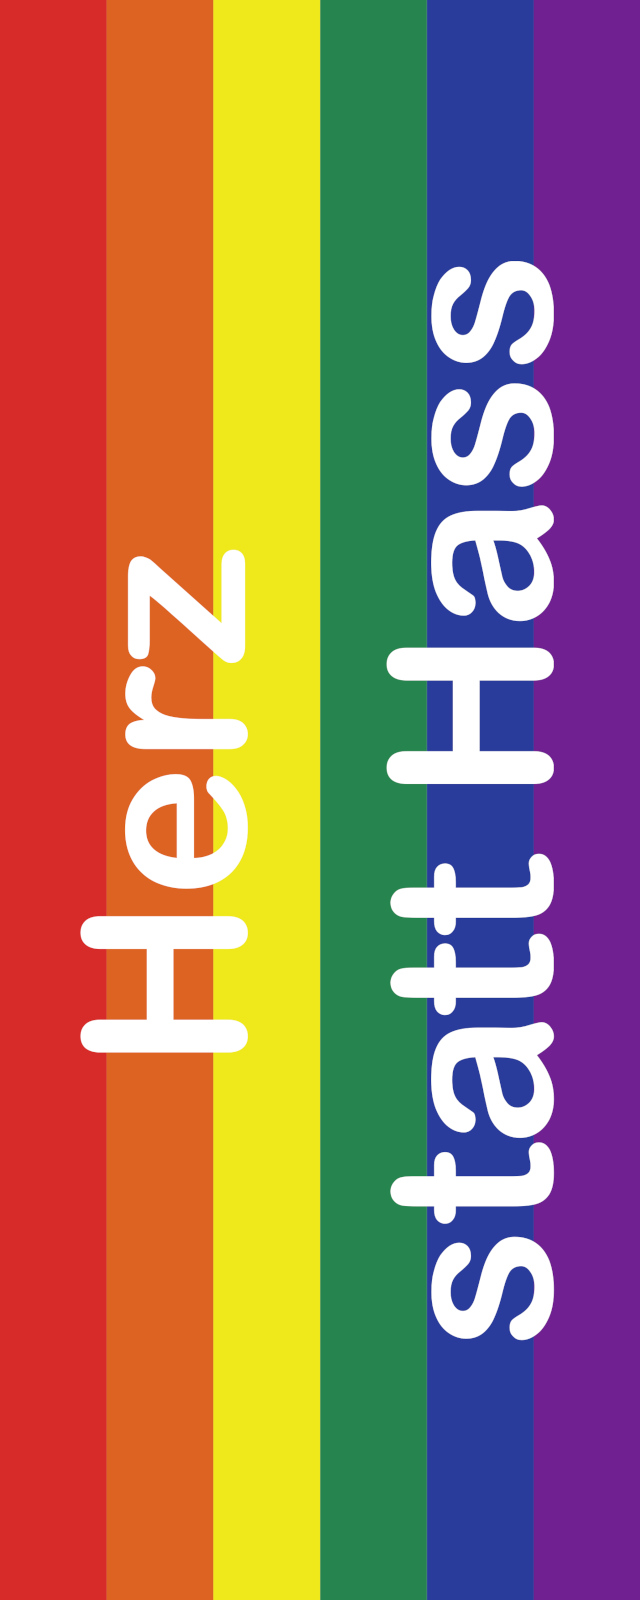 Bunte Regenbogenflagge mit dem Text 'Herz statt Hass' in weißer Schrift, symbolisiert Liebe, Vielfalt und friedliche Koexistenz.